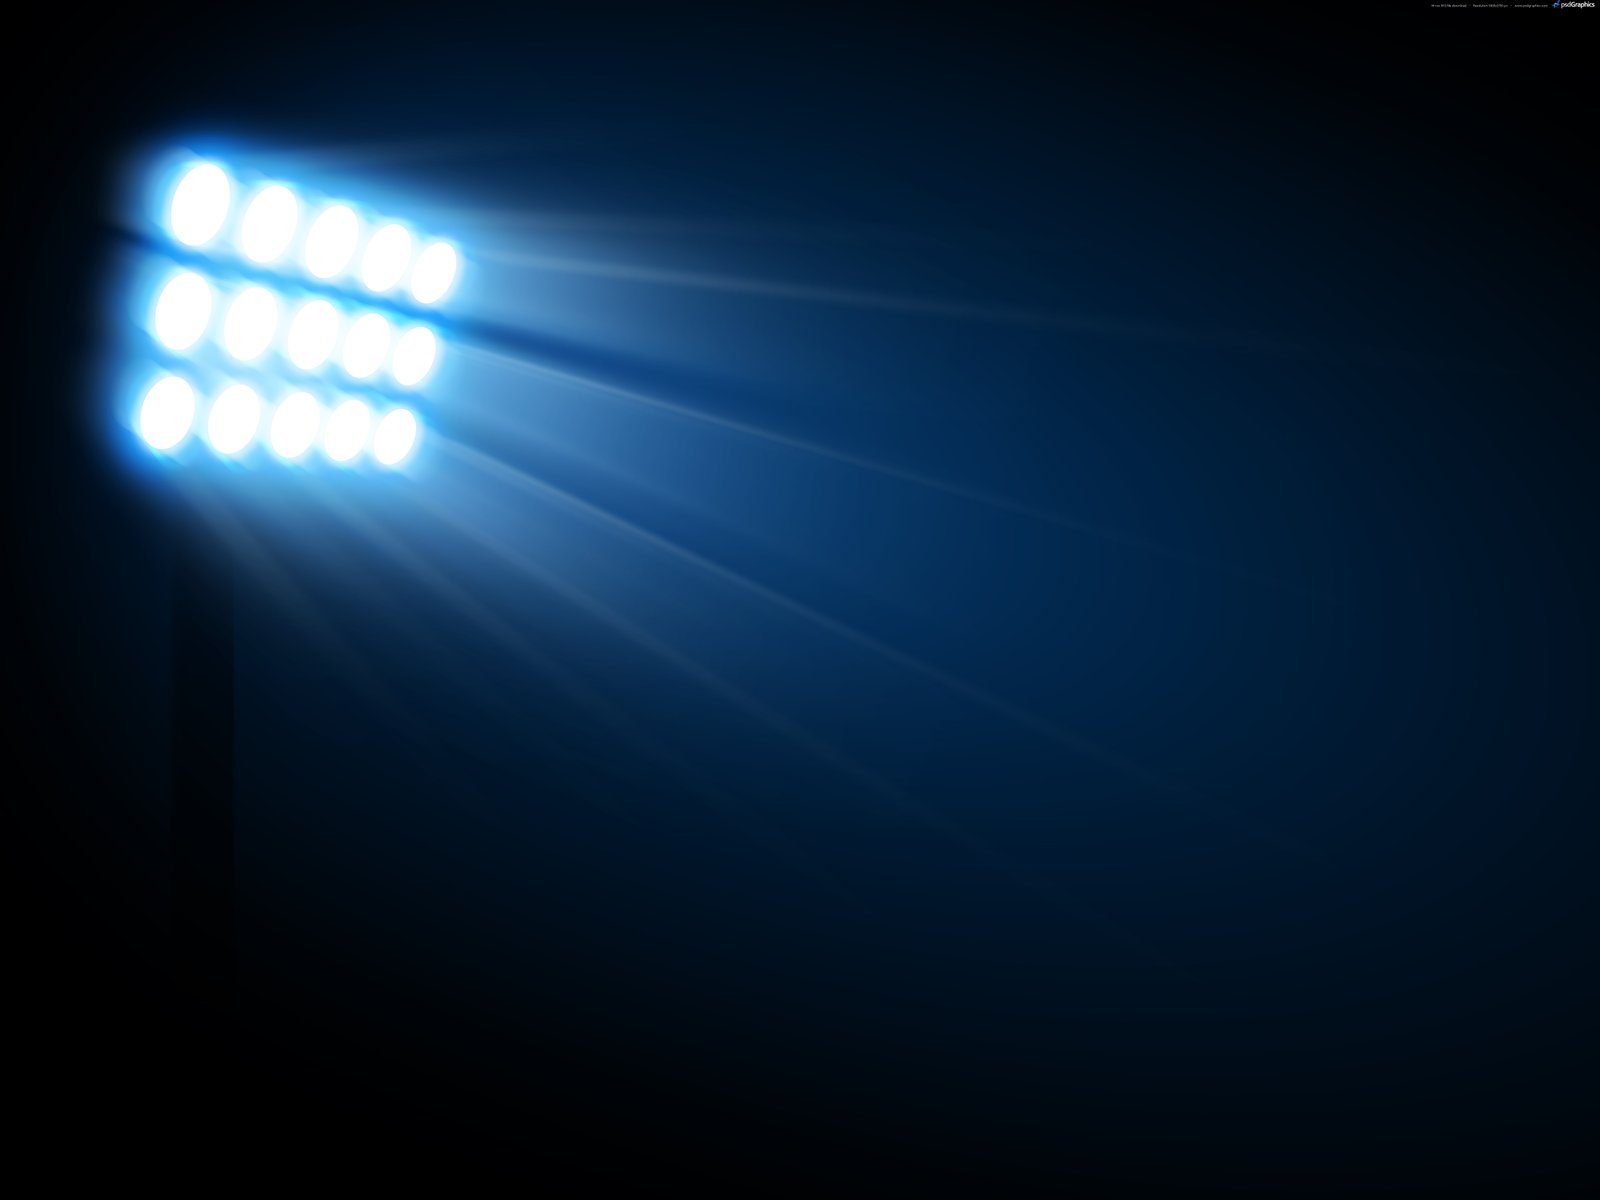 cricket stadium lights